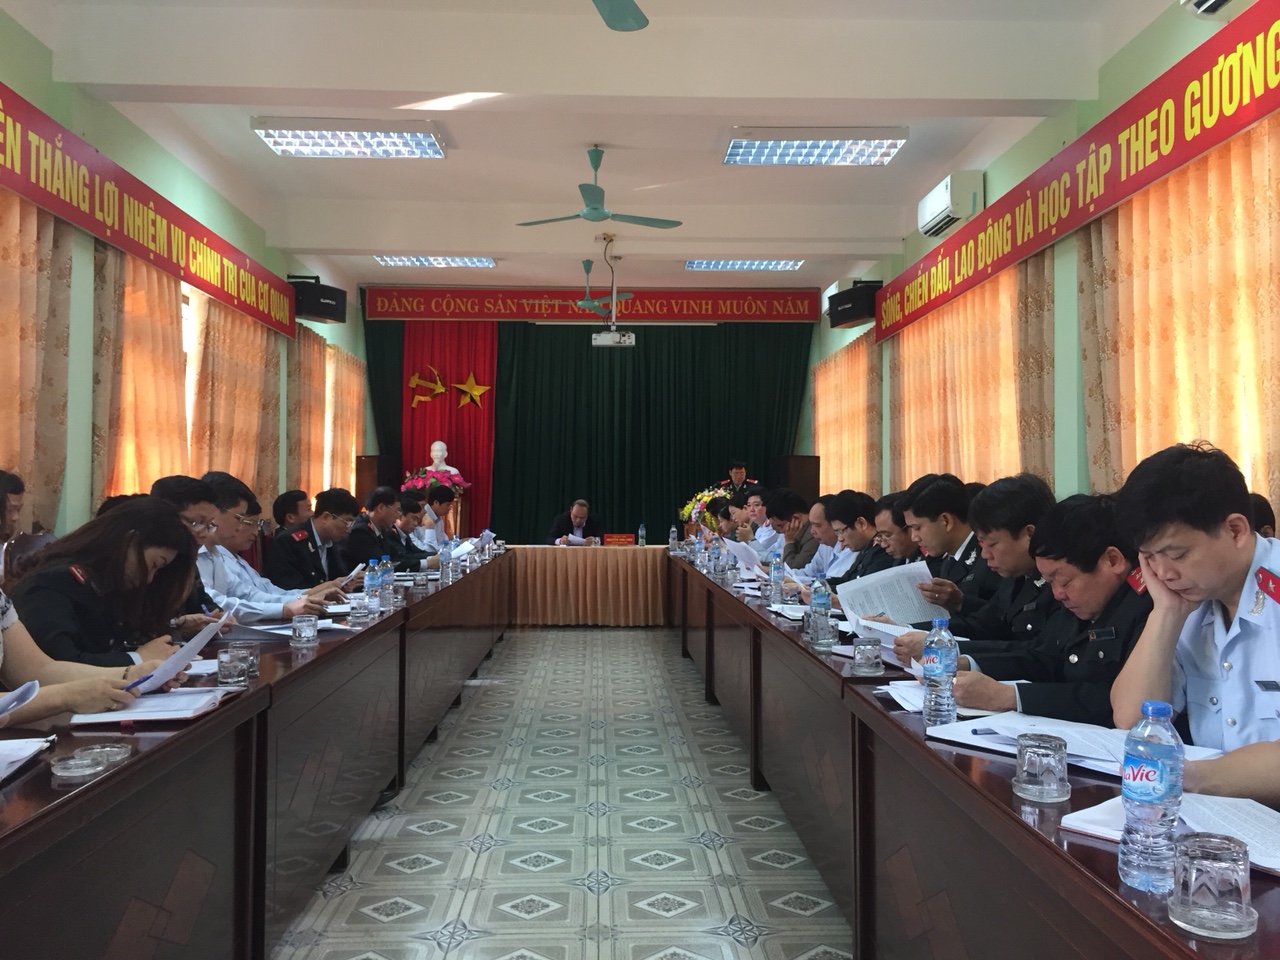 Chủ tịch UBND tỉnh Nguyễn Văn Linh làm việc với cán bộ lãnh đạo ngành Thanh tra tỉnh Bắc Giang